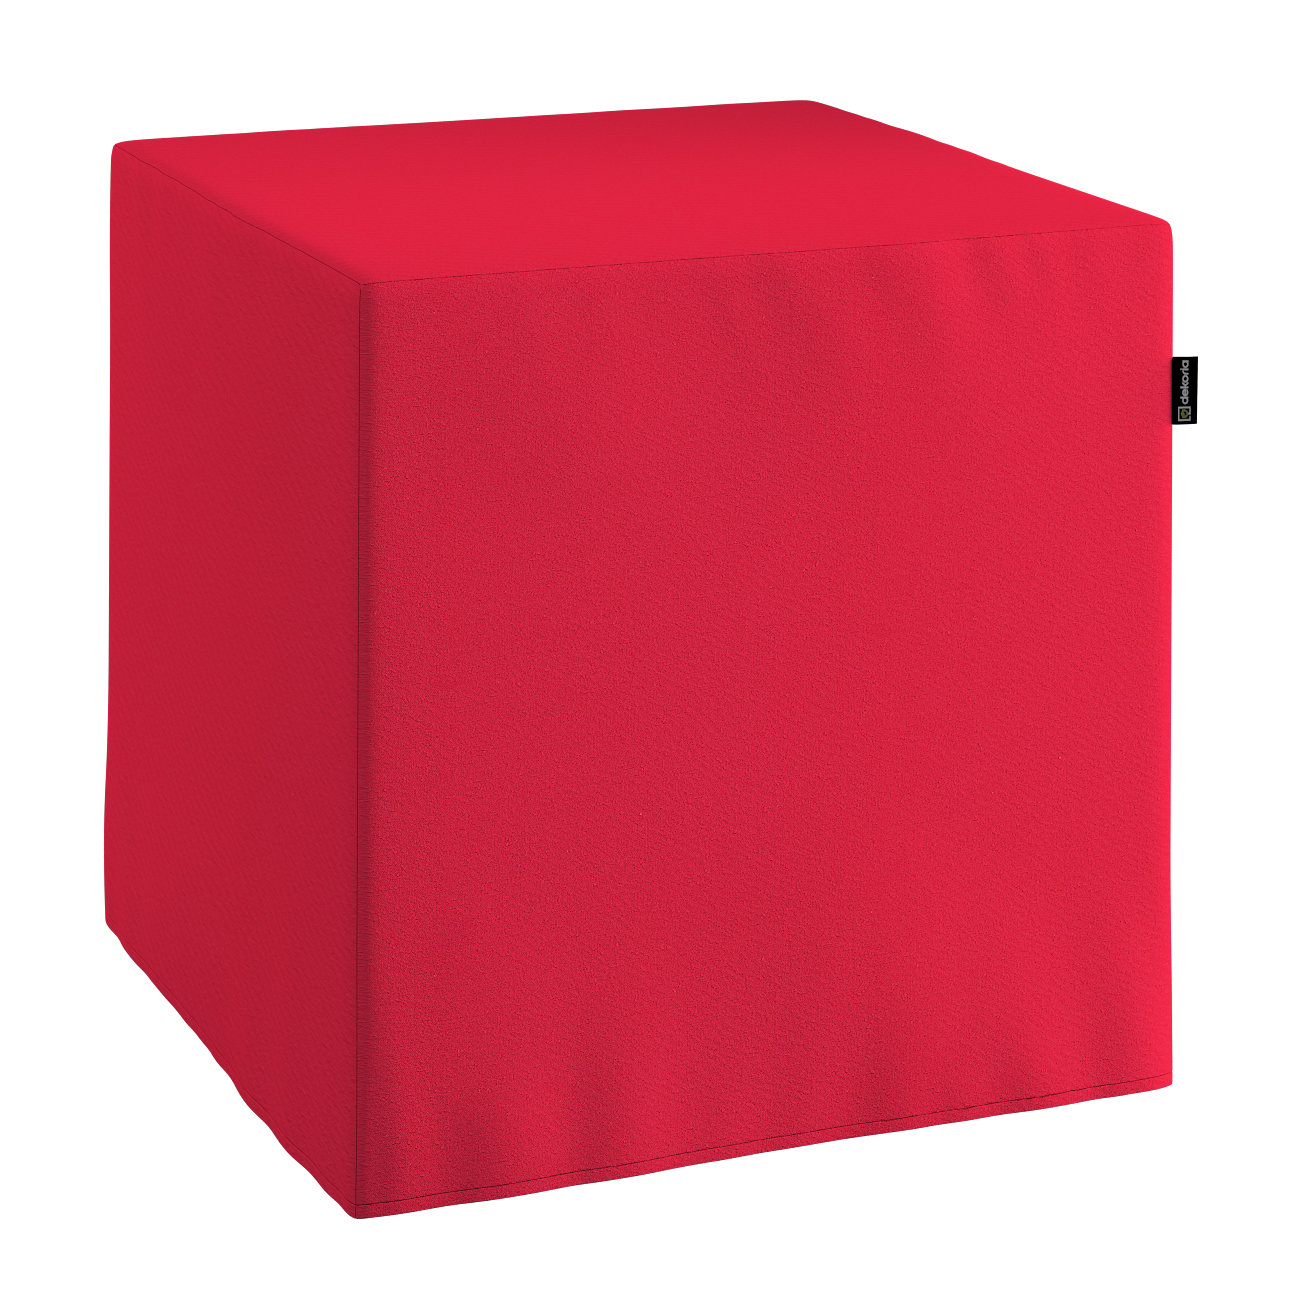 E-shop Dekoria Taburetka tvrdá, kocka, červená, 40 x 40 x 40 cm, Quadro, 136-19